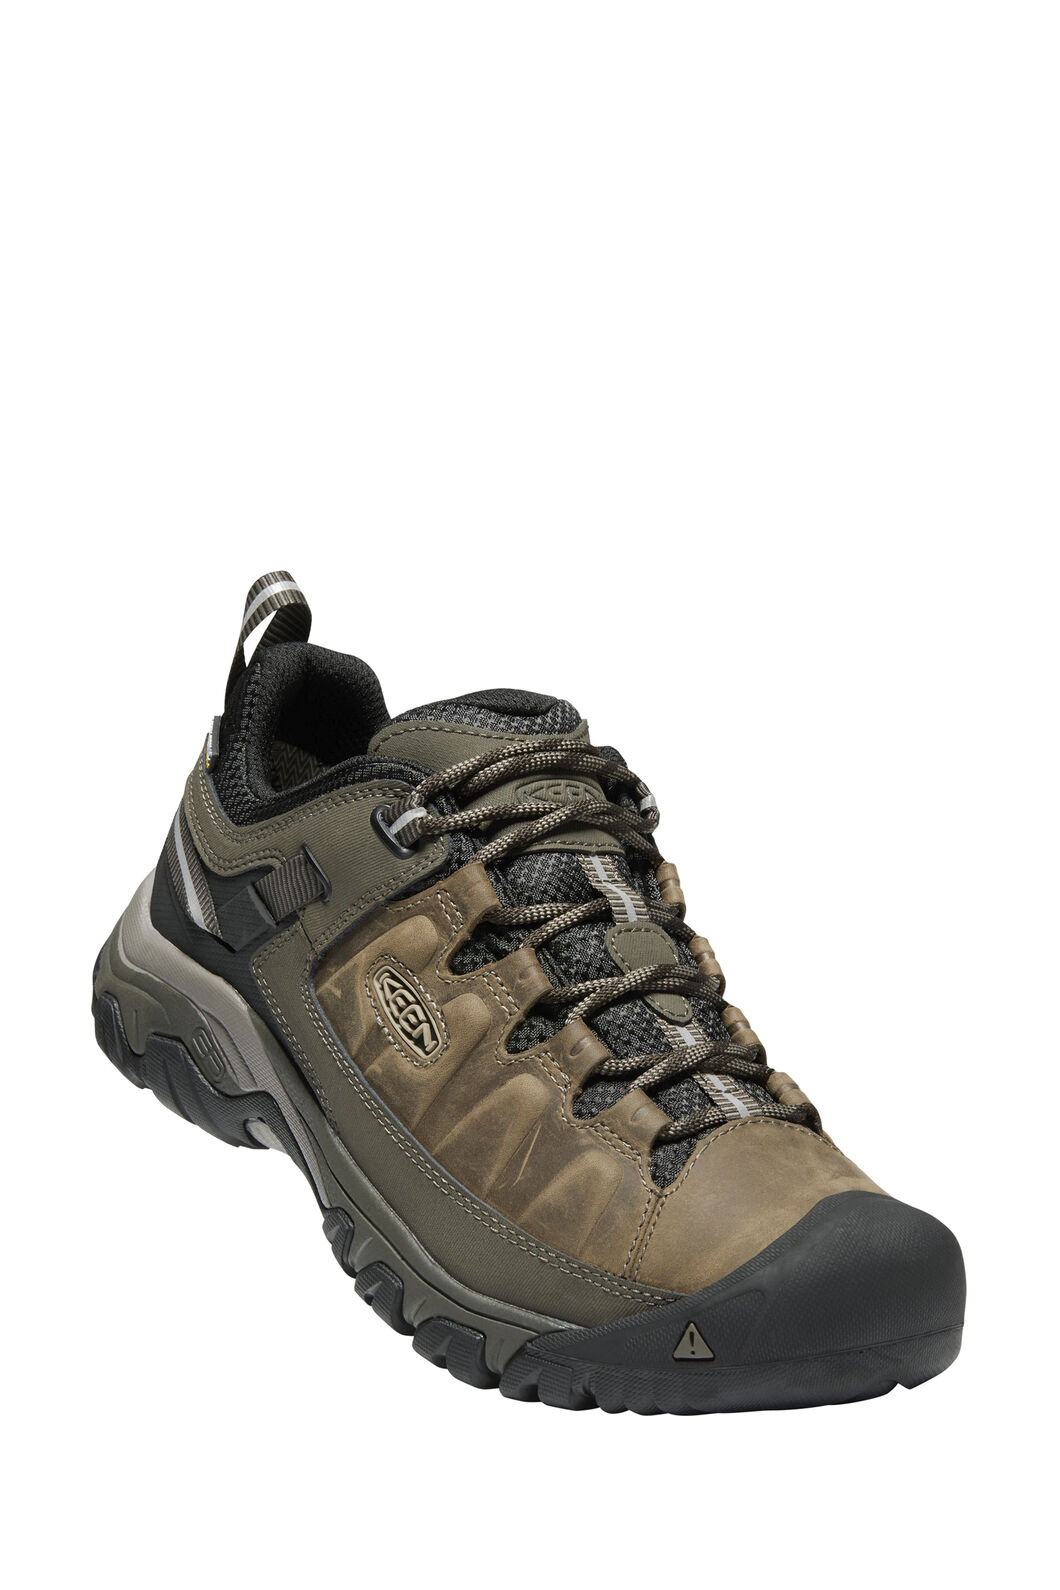 Keen Targhee III WP Hiking Shoes — Men's | Macpac